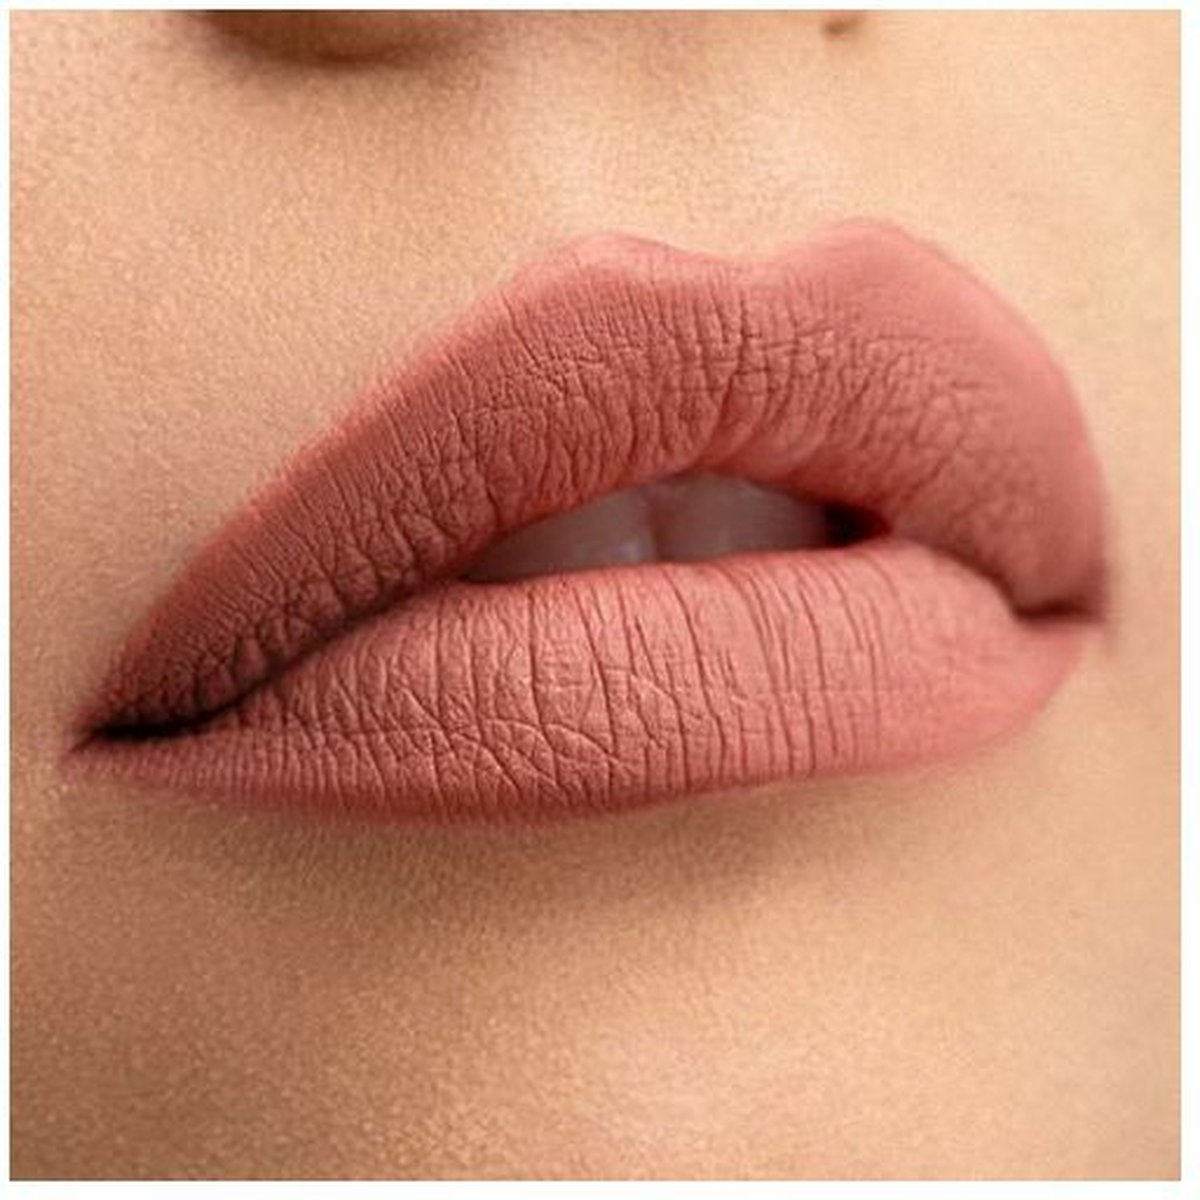 Tinktura - Jukebox - Vloeibare lippenstift - Matte Liquid Lipstick - Vegan - Parabeenvrij - Natuurlijk - Kissproof